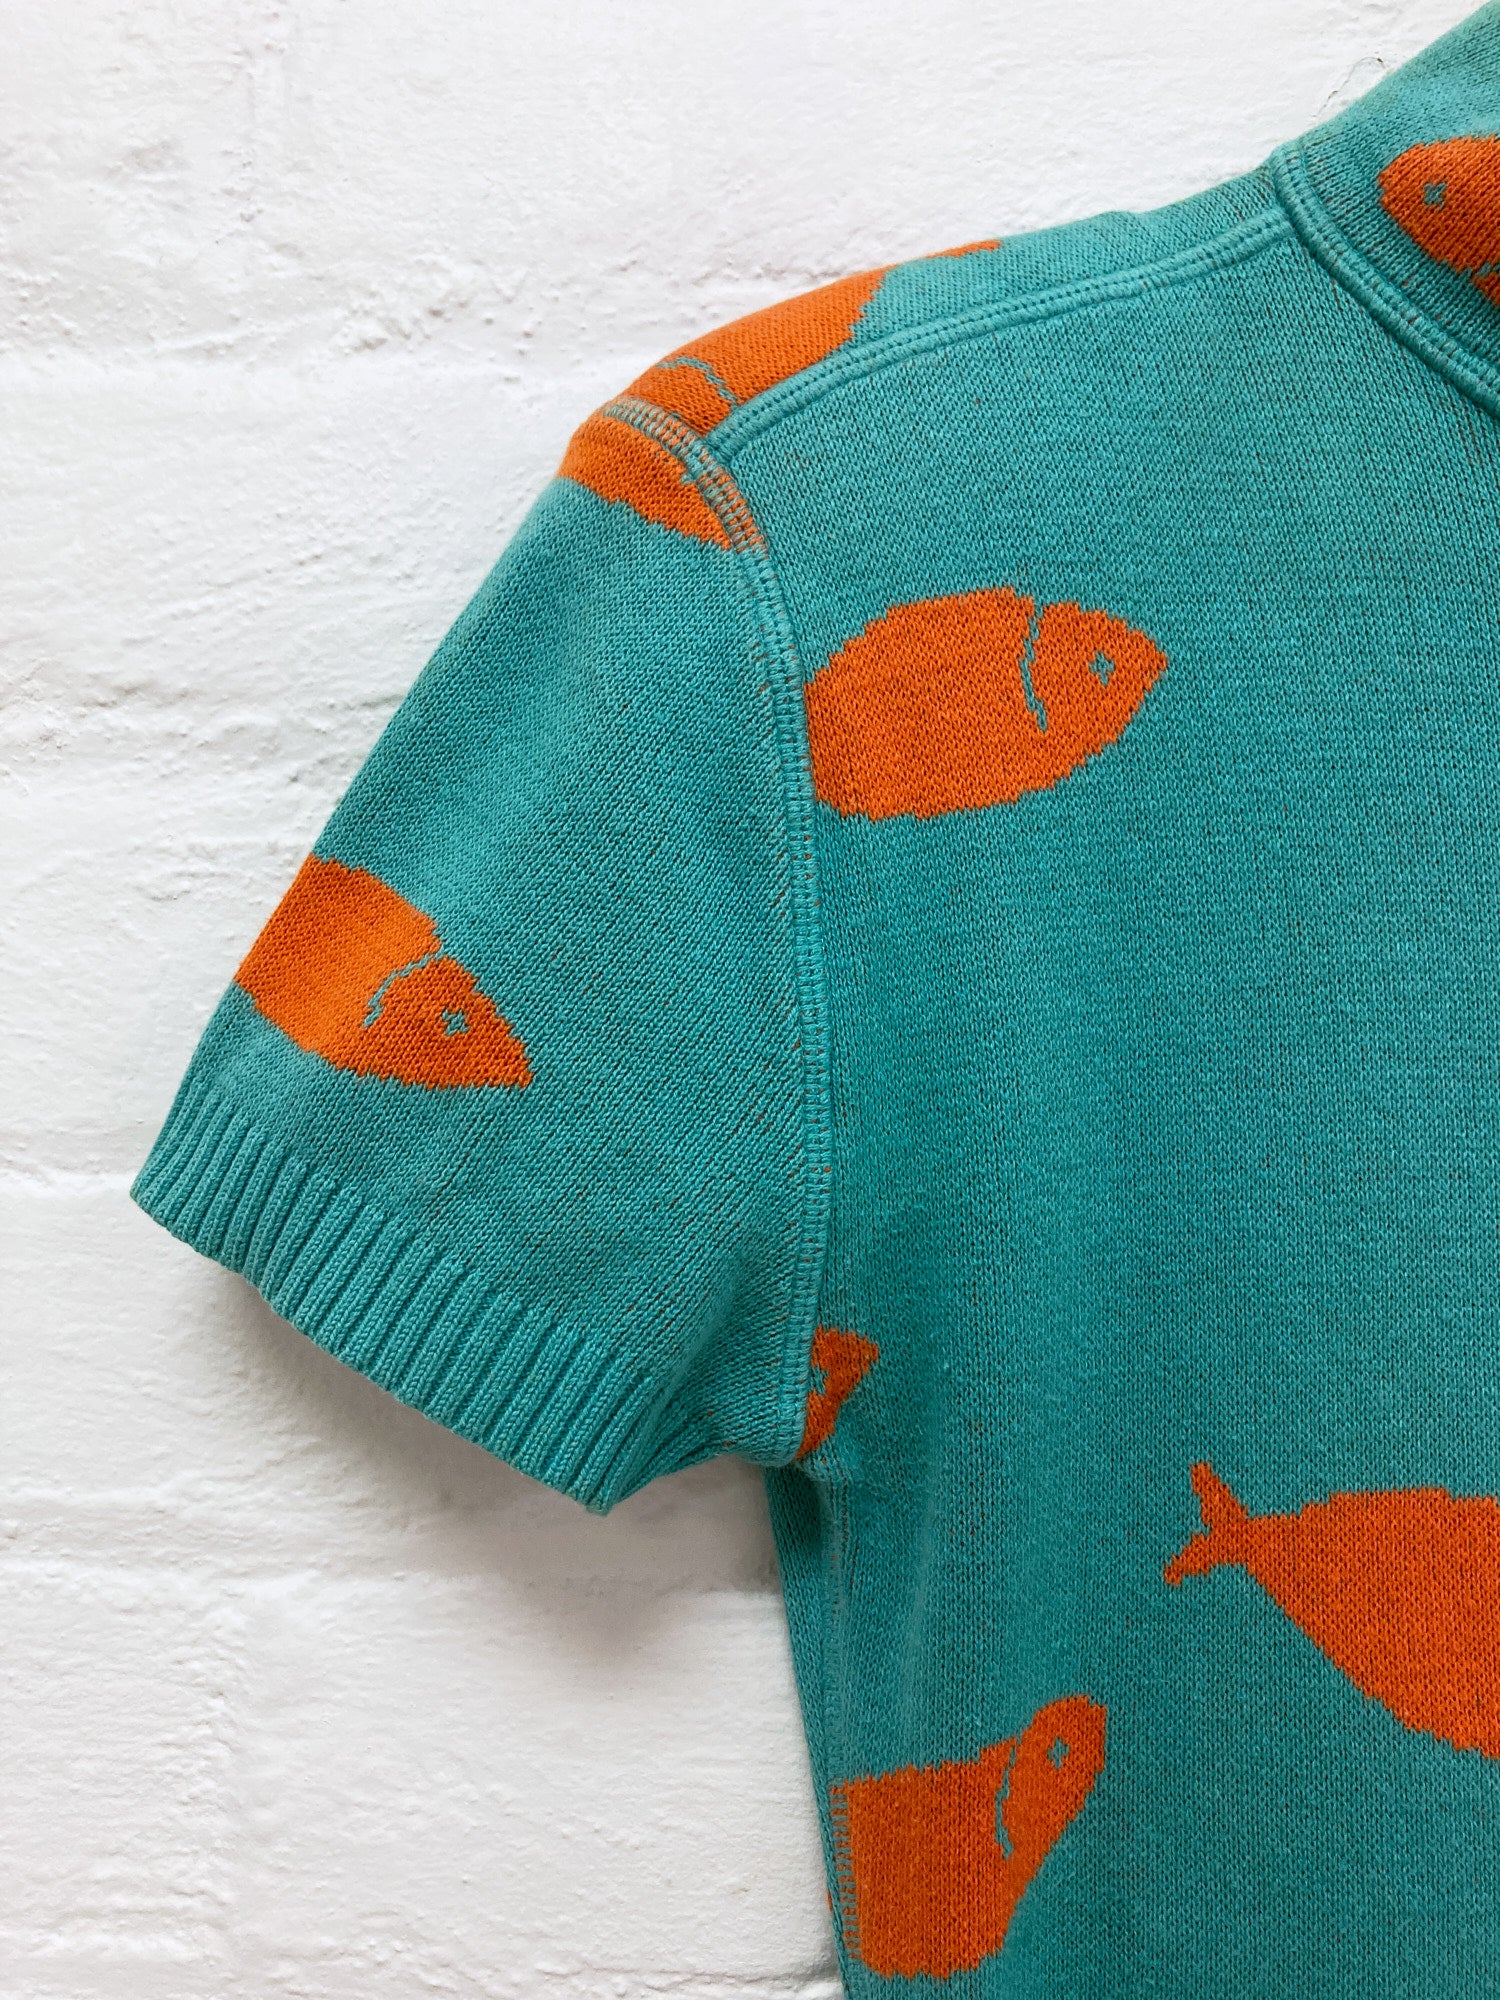 Dorothee Bis blue knit goldfish pattern mock neck short sleeve dress